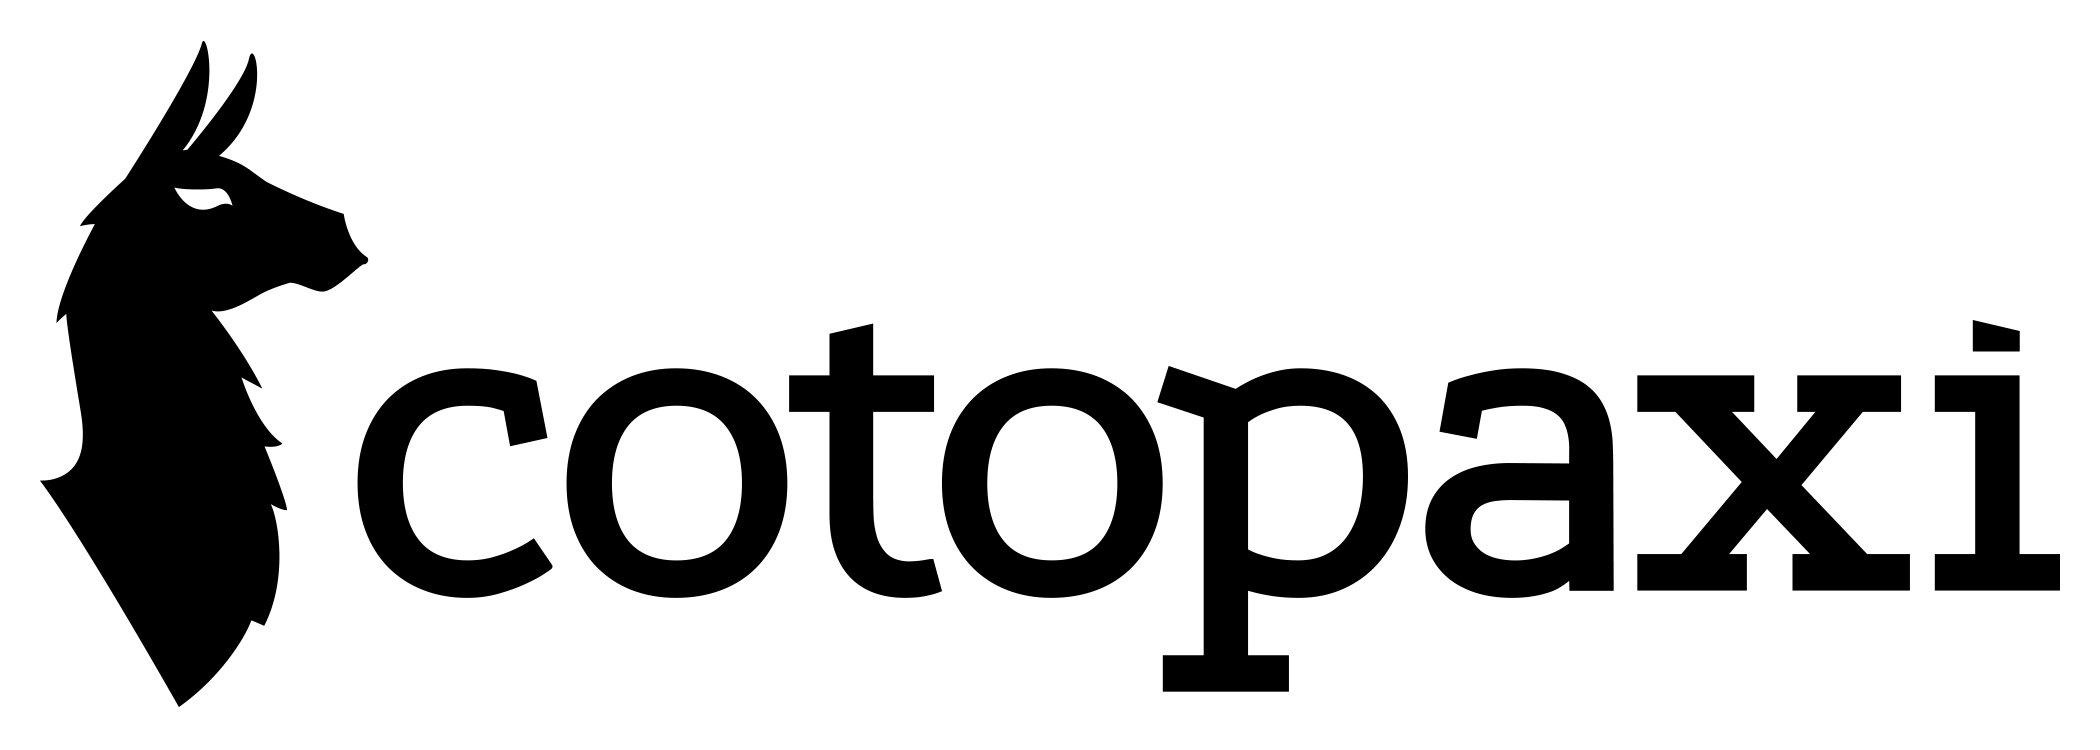 Cootpaxi Logo.jpg